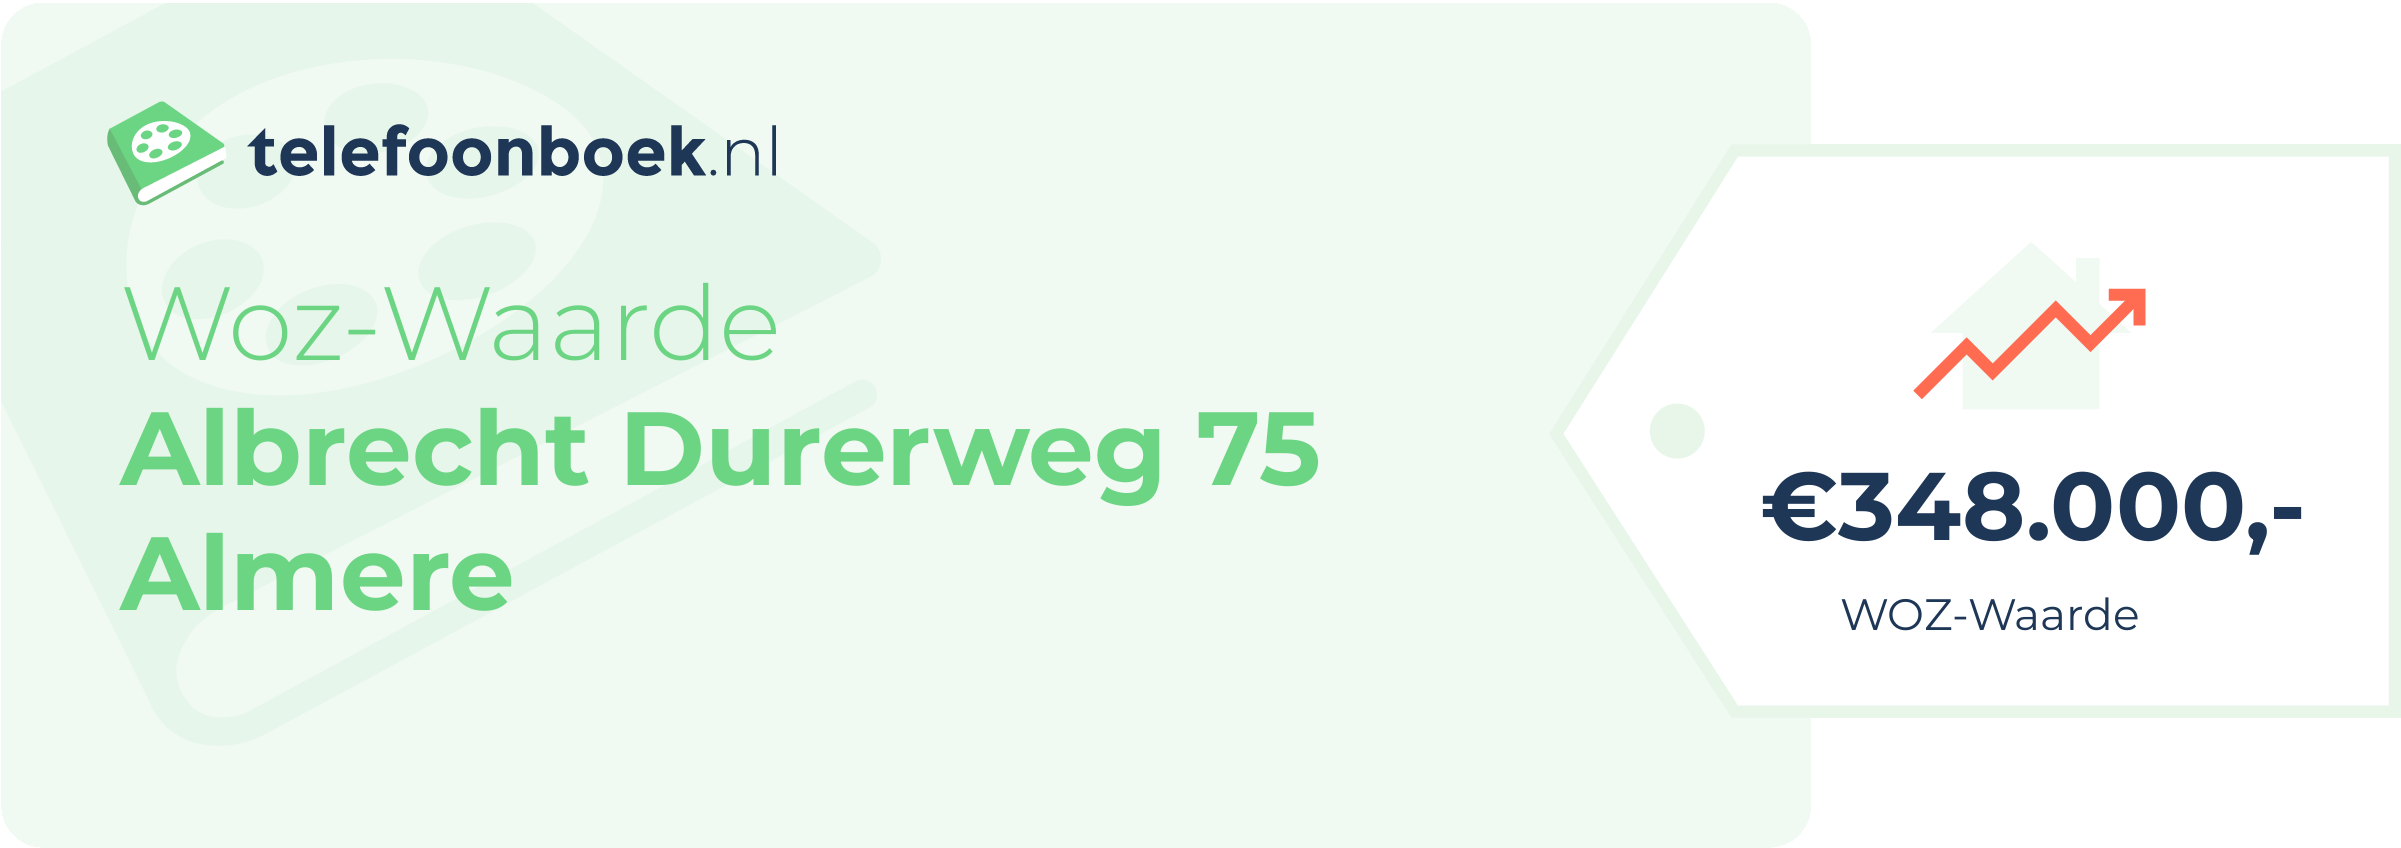 WOZ-waarde Albrecht Durerweg 75 Almere